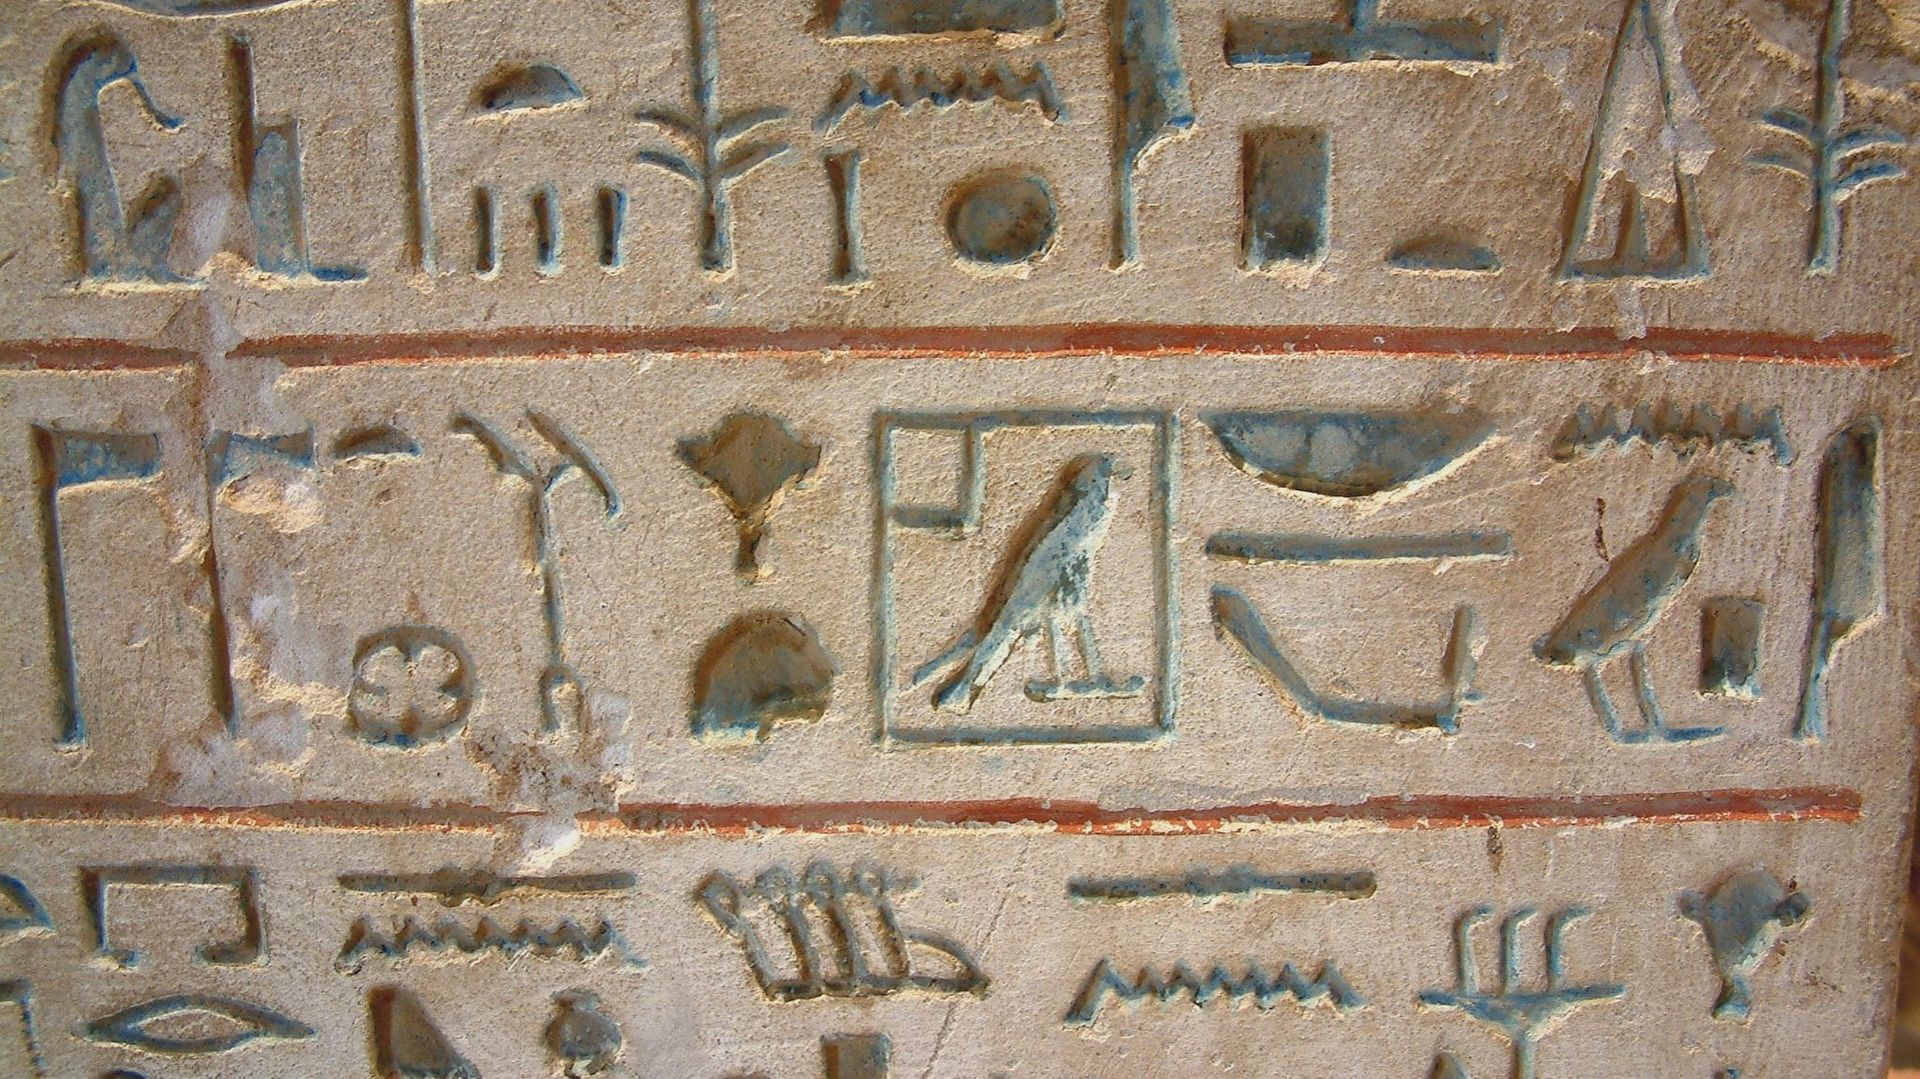 Hiéroglyphes conservés au musée du Louvre. Les lignes de séparation en rouge indiquent que le texte est horizontal. Les oiseaux regardent vers la droite : il faut donc lire le texte de droite à gauche.